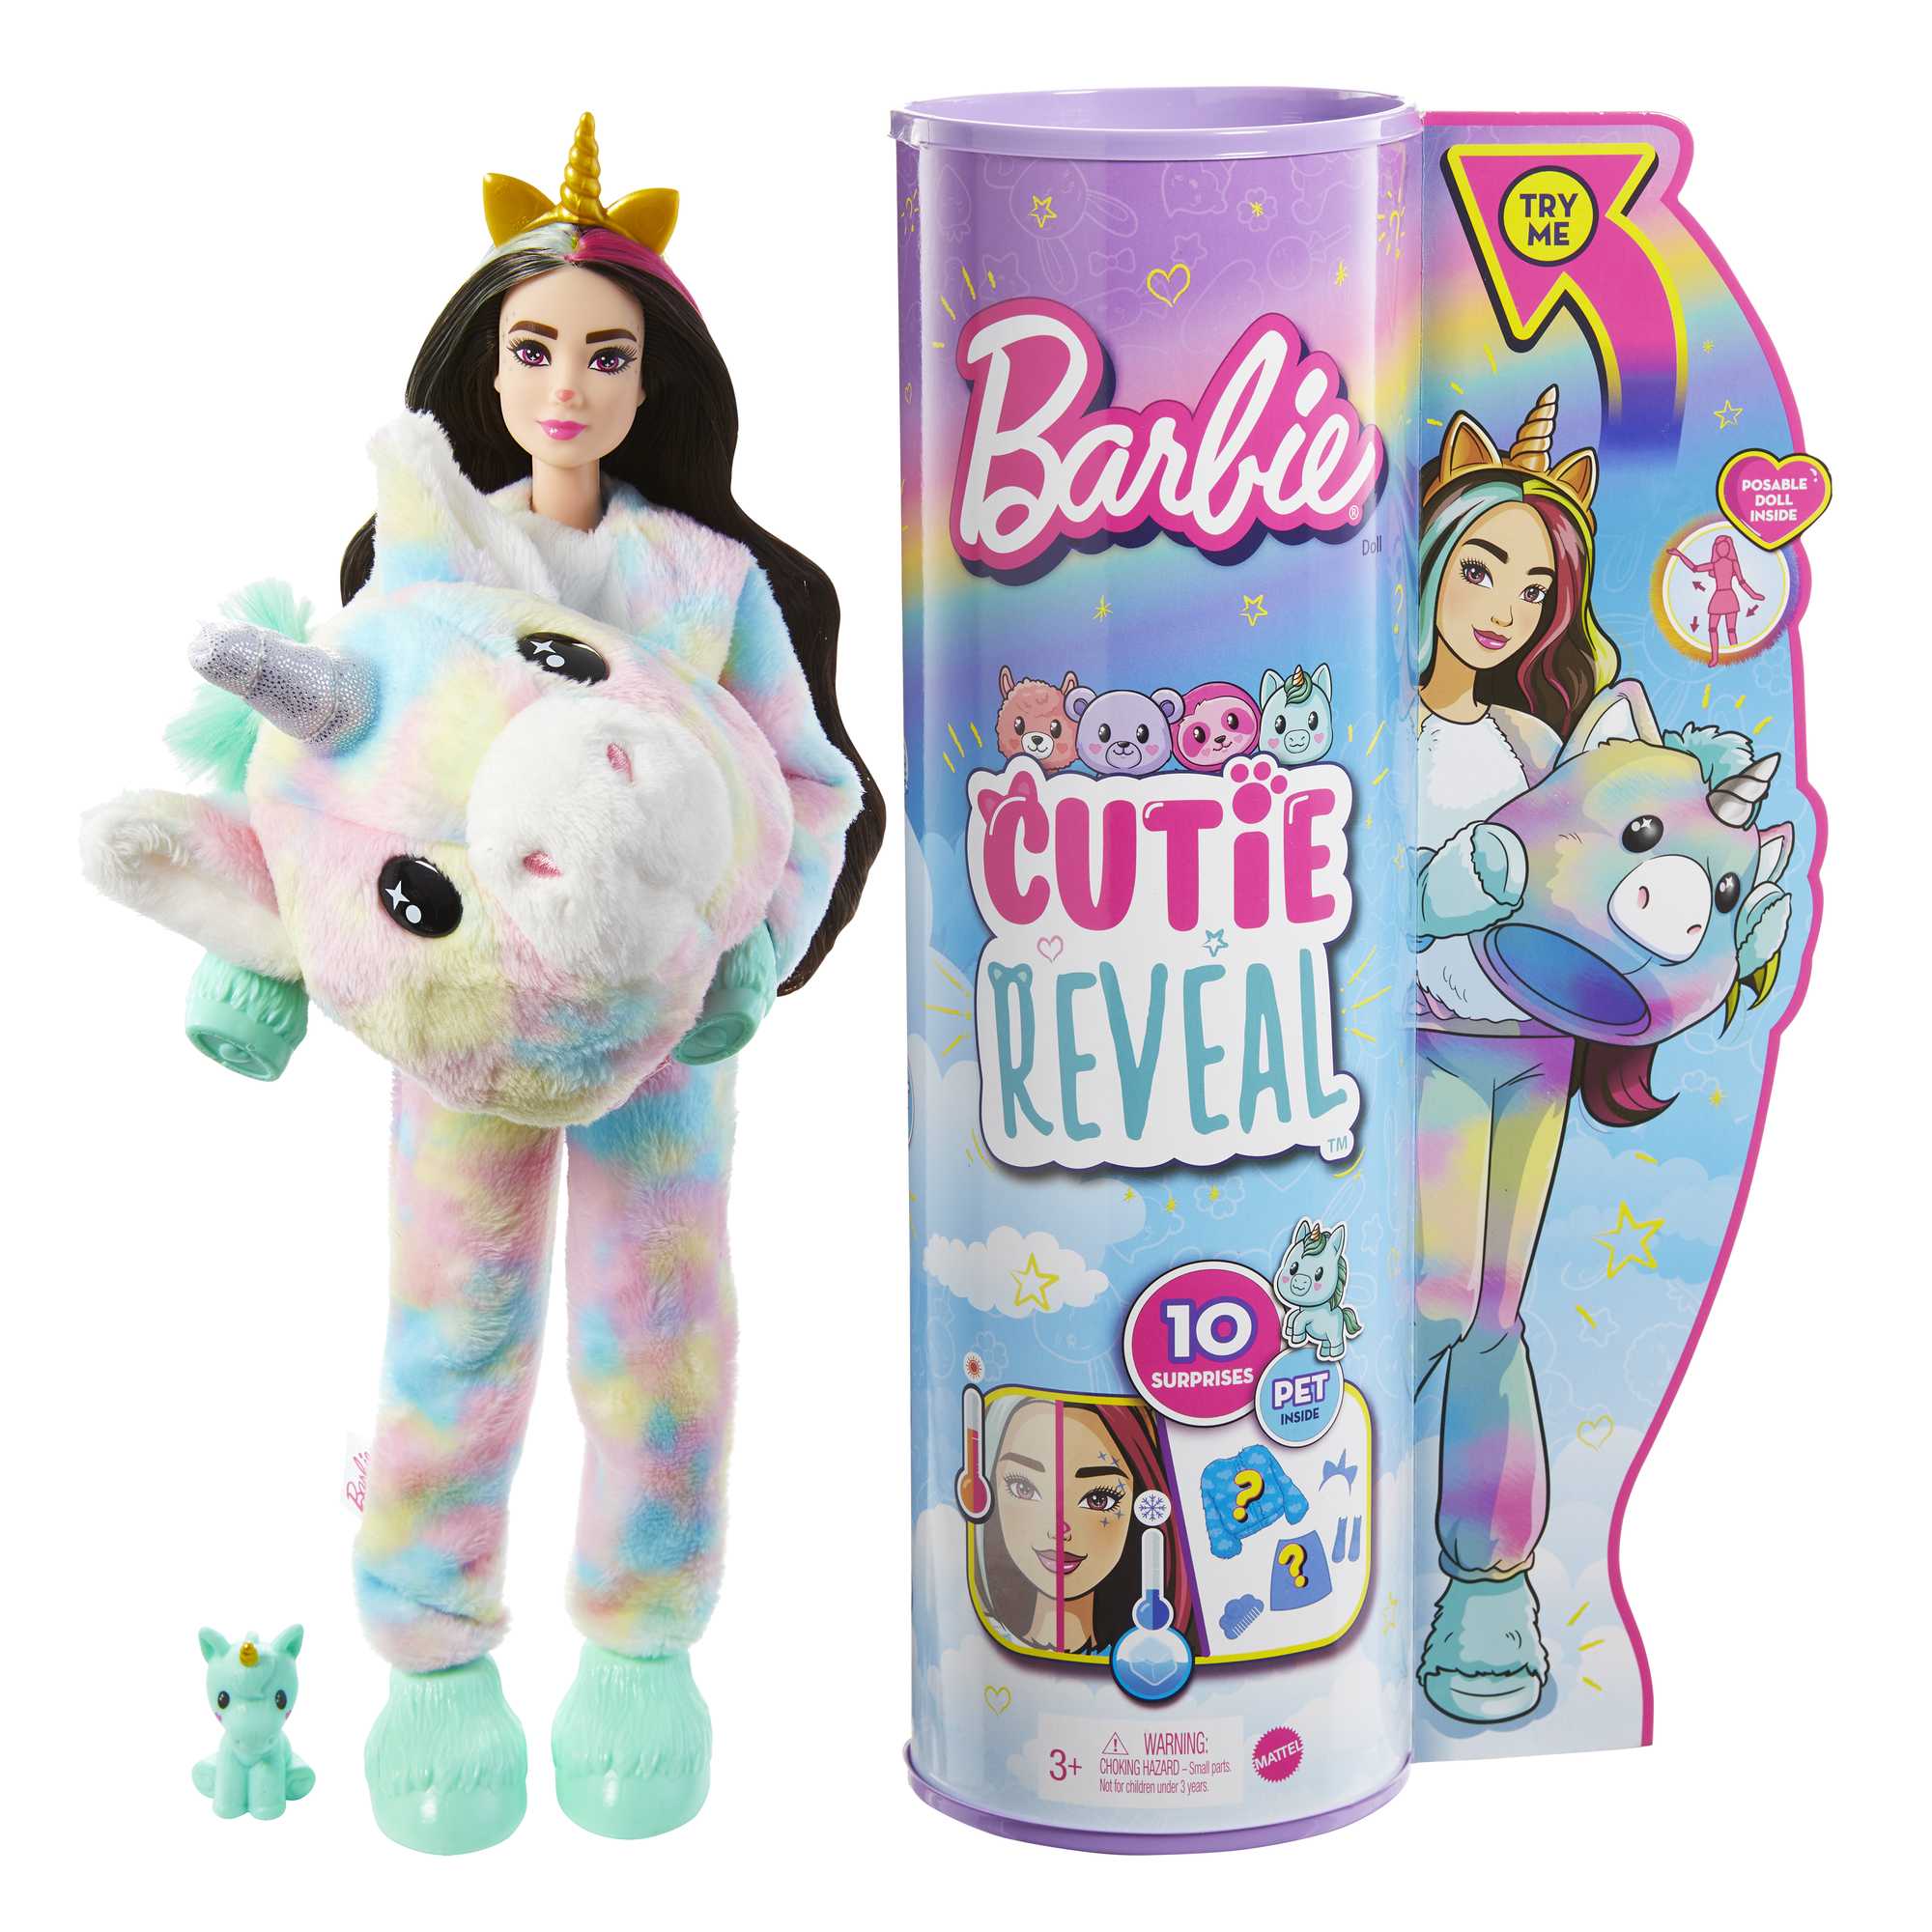 Barbie Cutie Reveal Doll HJL58 | Mattel